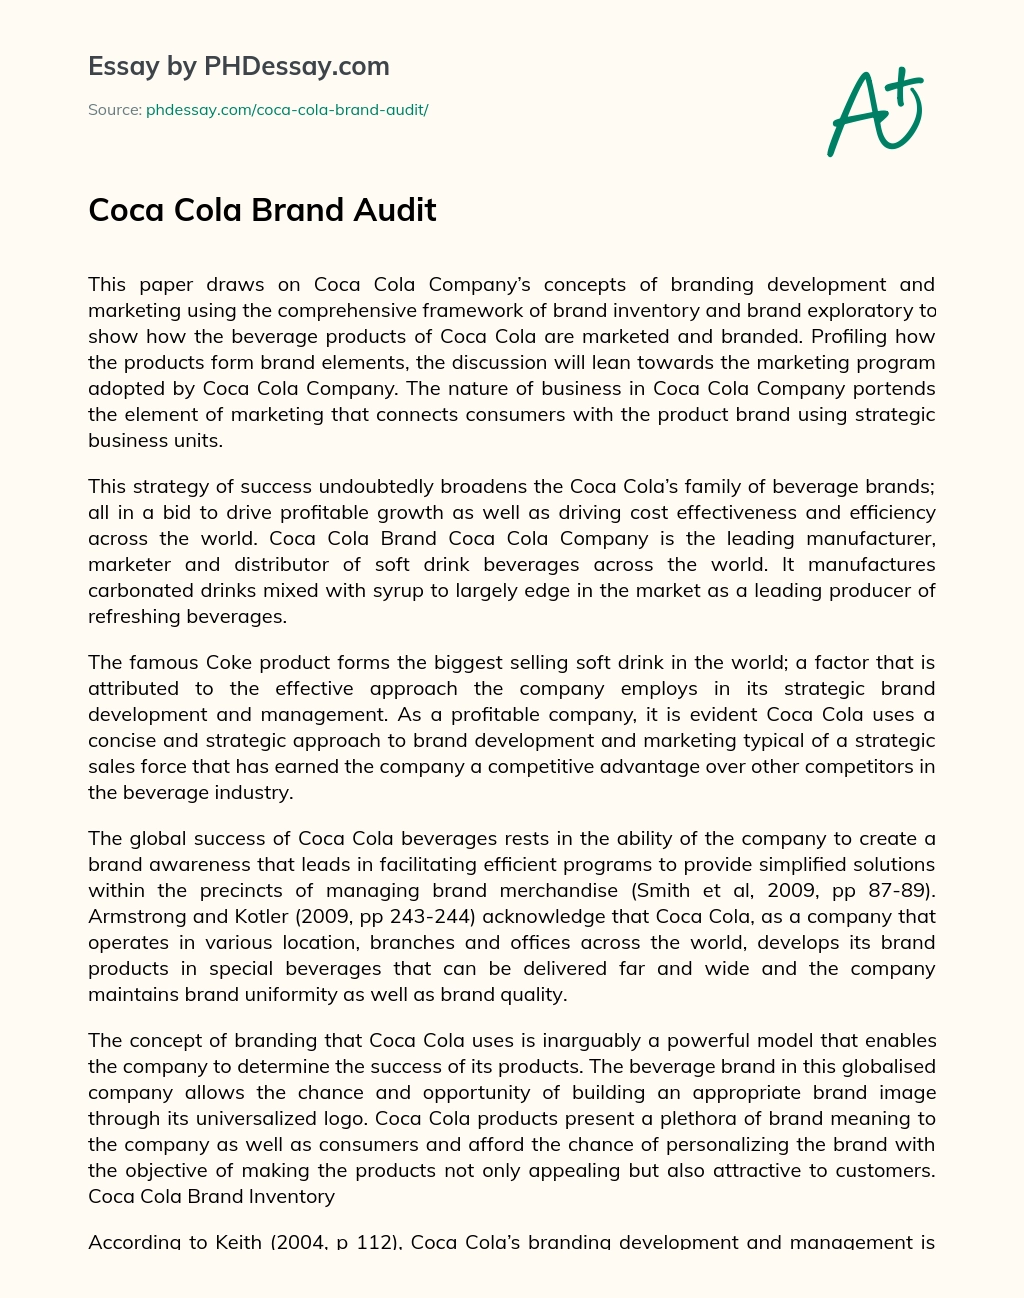 Coca Cola Brand Audit essay